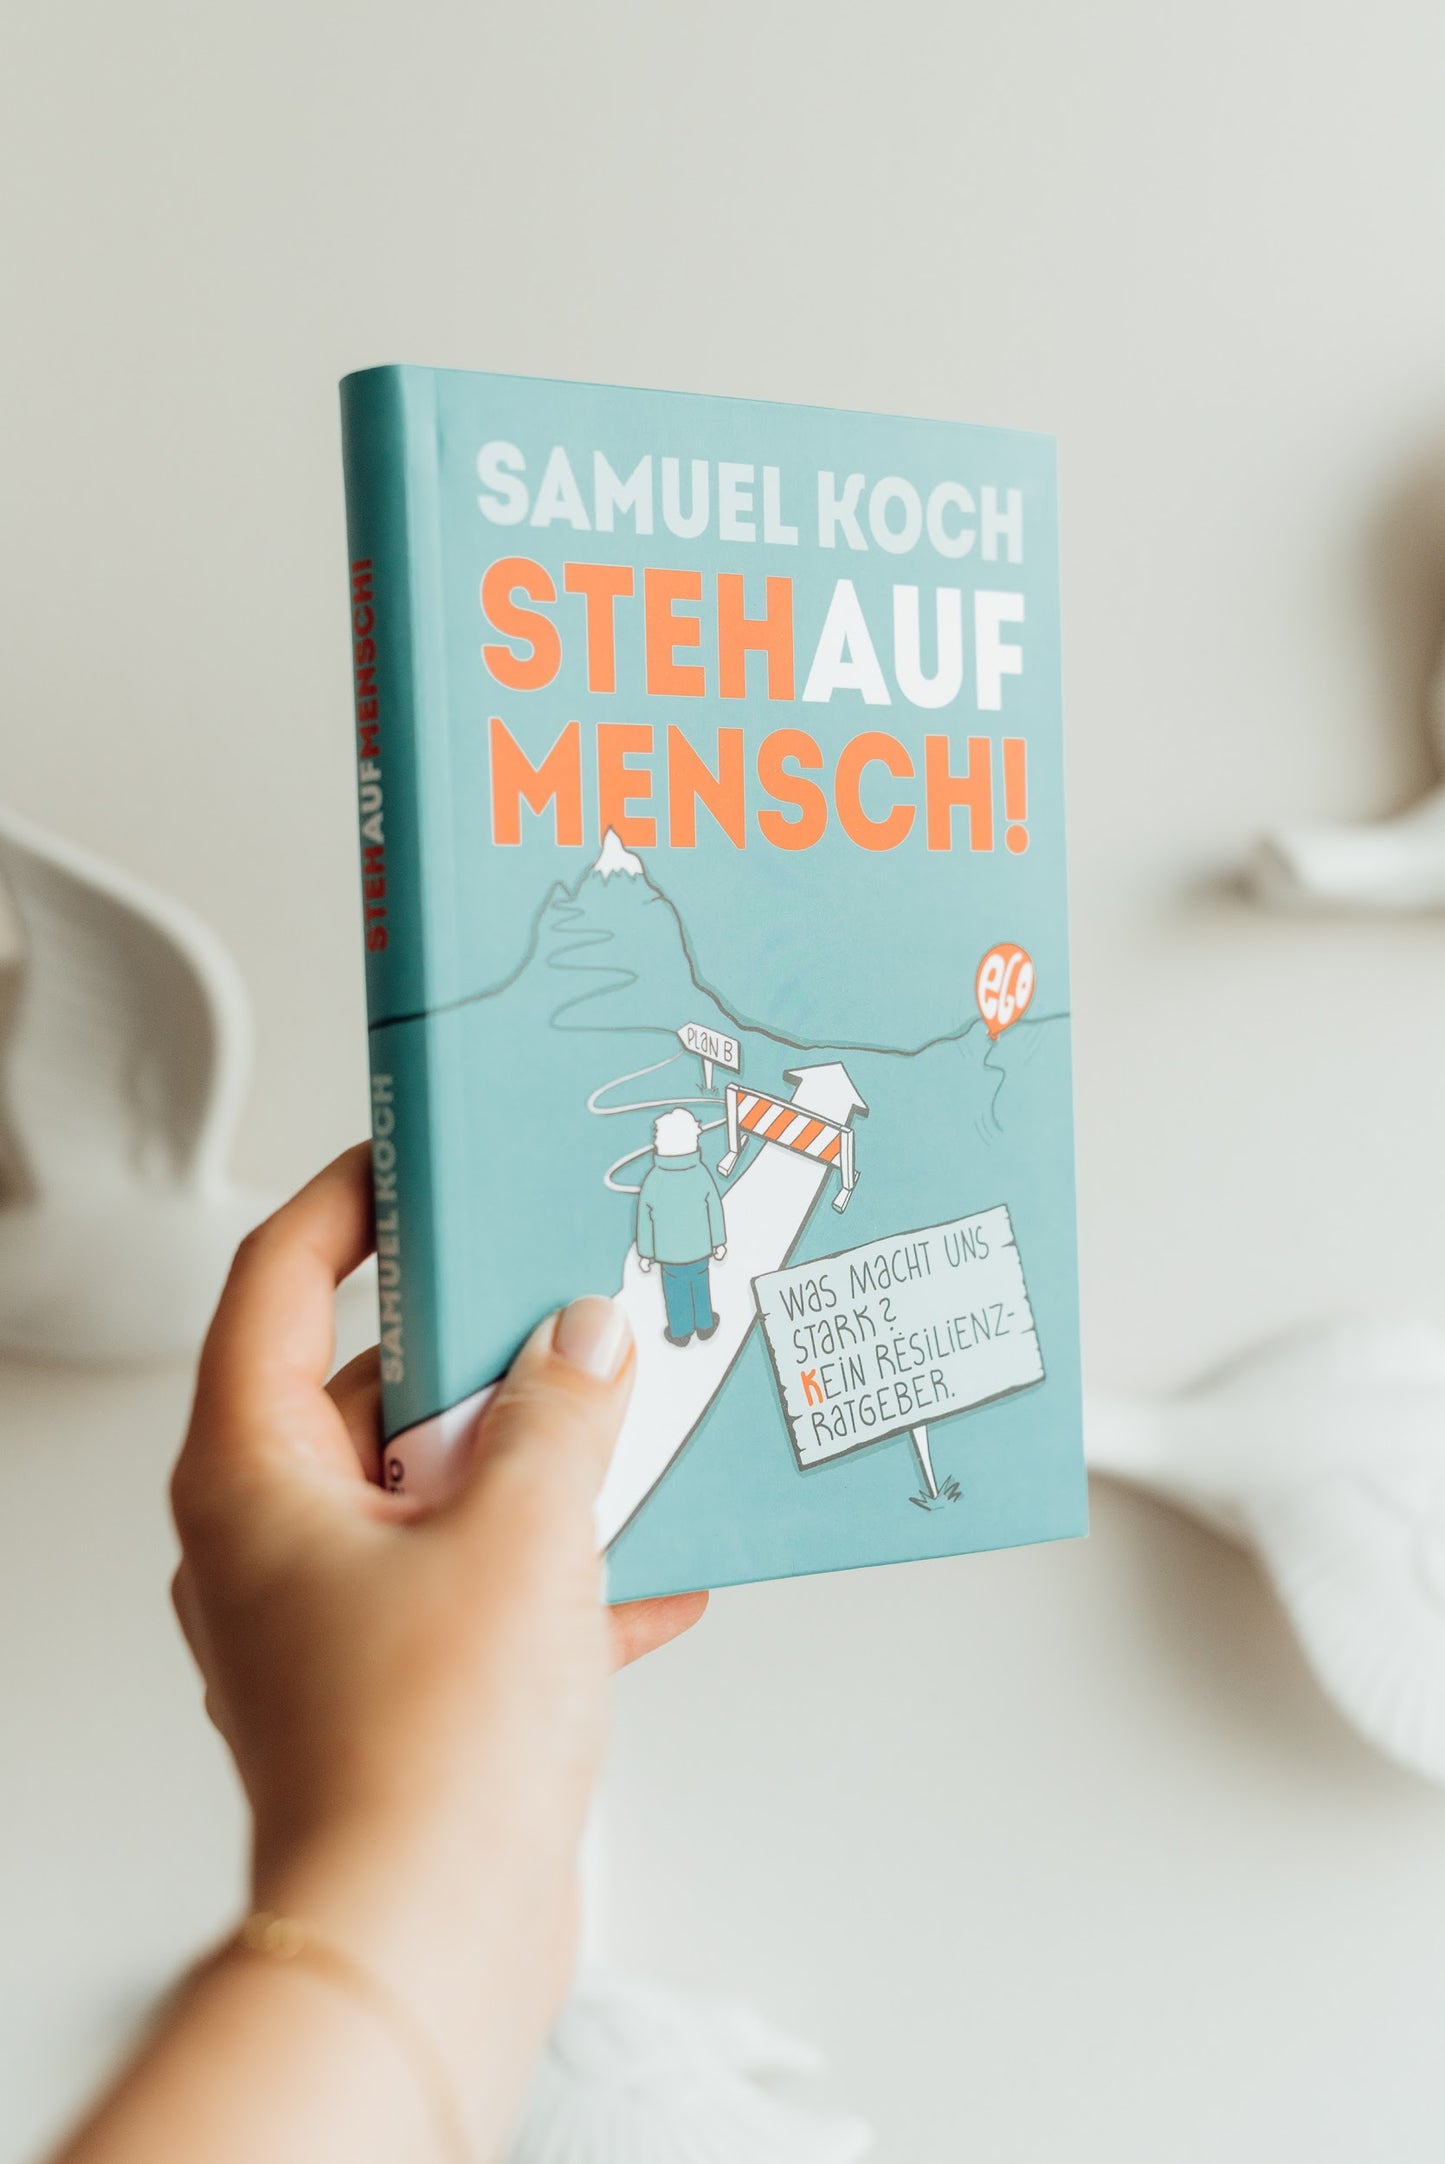 Buch "StehAufMensch!"